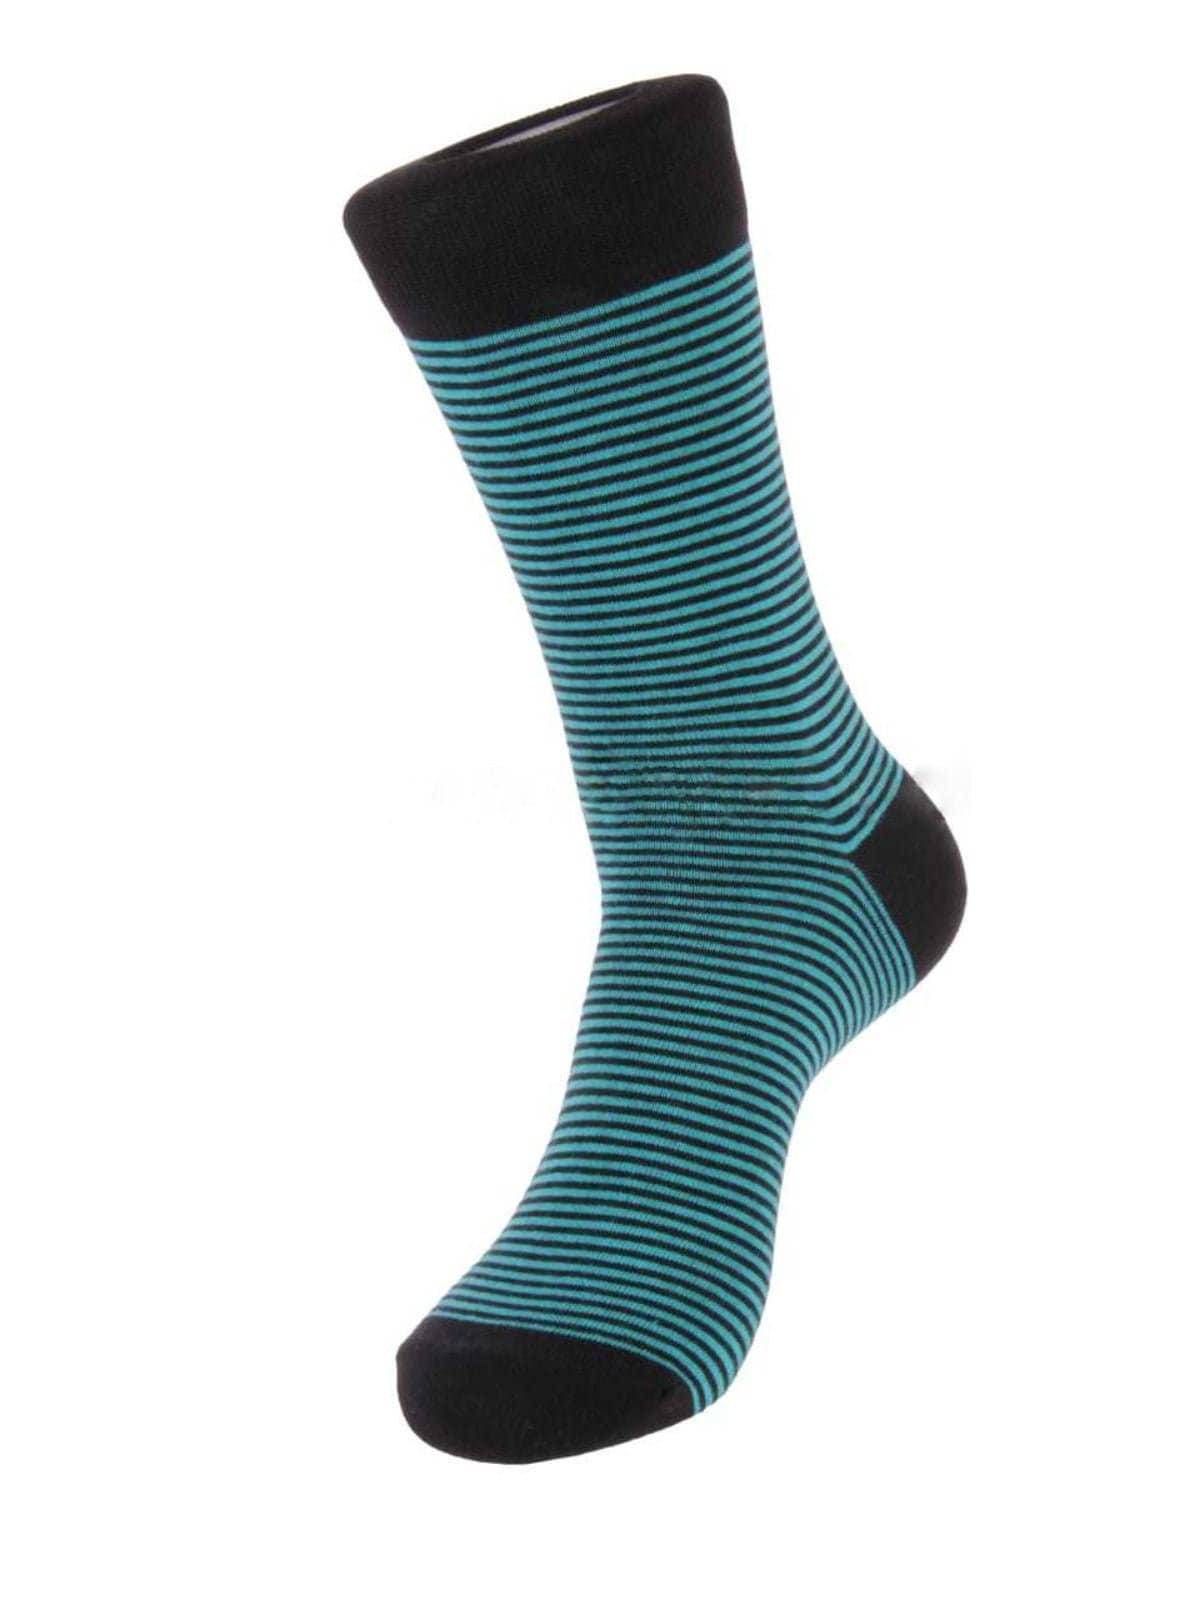 Stylish men's socks Blue Stripe size 39-43 high quality | Etsy